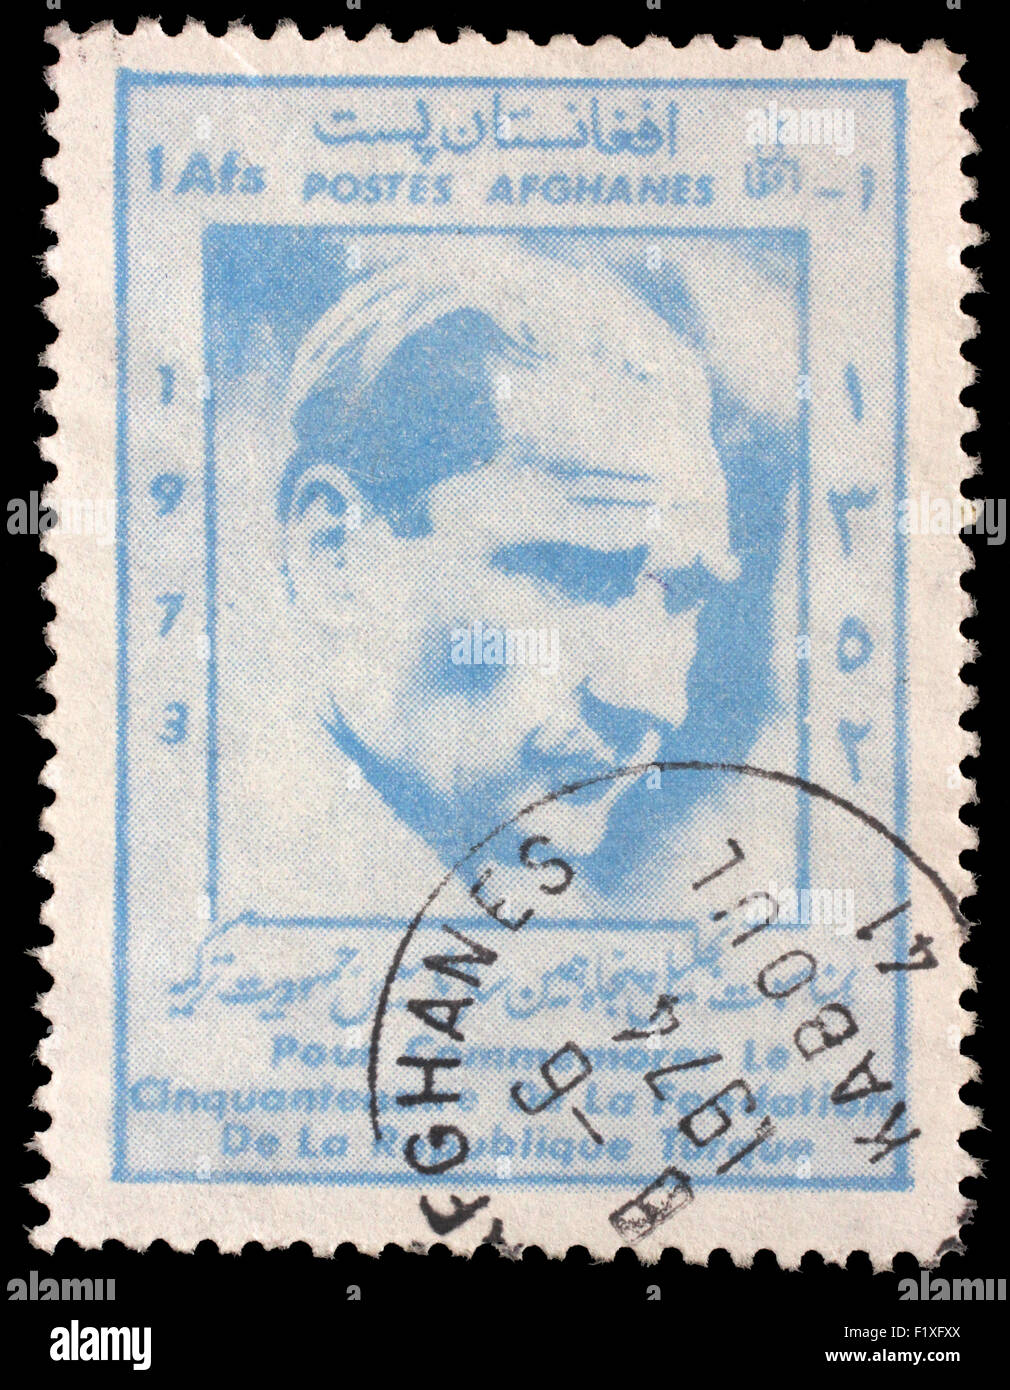 Timbro stampato in Afghanistan mostra Mustafa Kemal Ataturk, 1881-1938, cinquantesimo anniversario della repubblica turca, circa 1973. Foto Stock